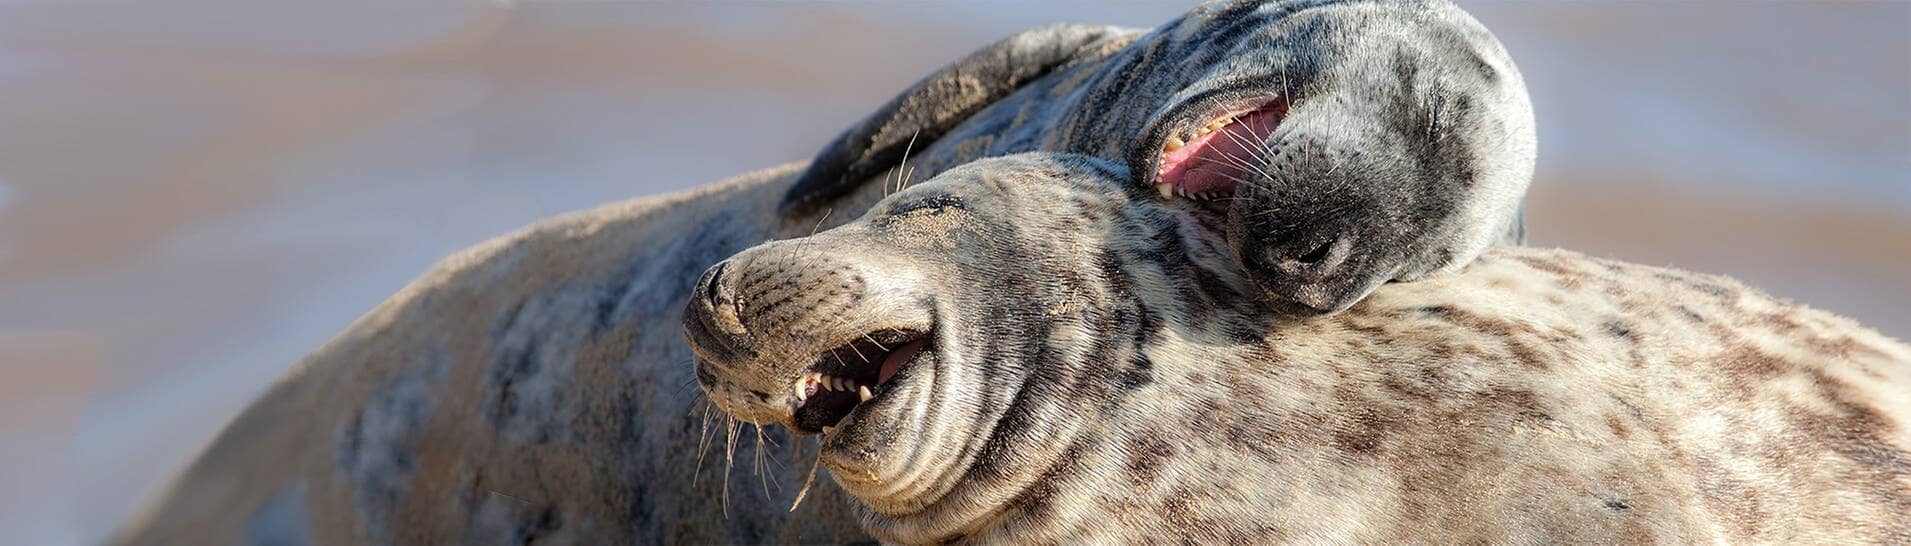 Zwei schmusende Robben scheinen zu lachen (Foto: Adobe Stock / Ian Dyball)